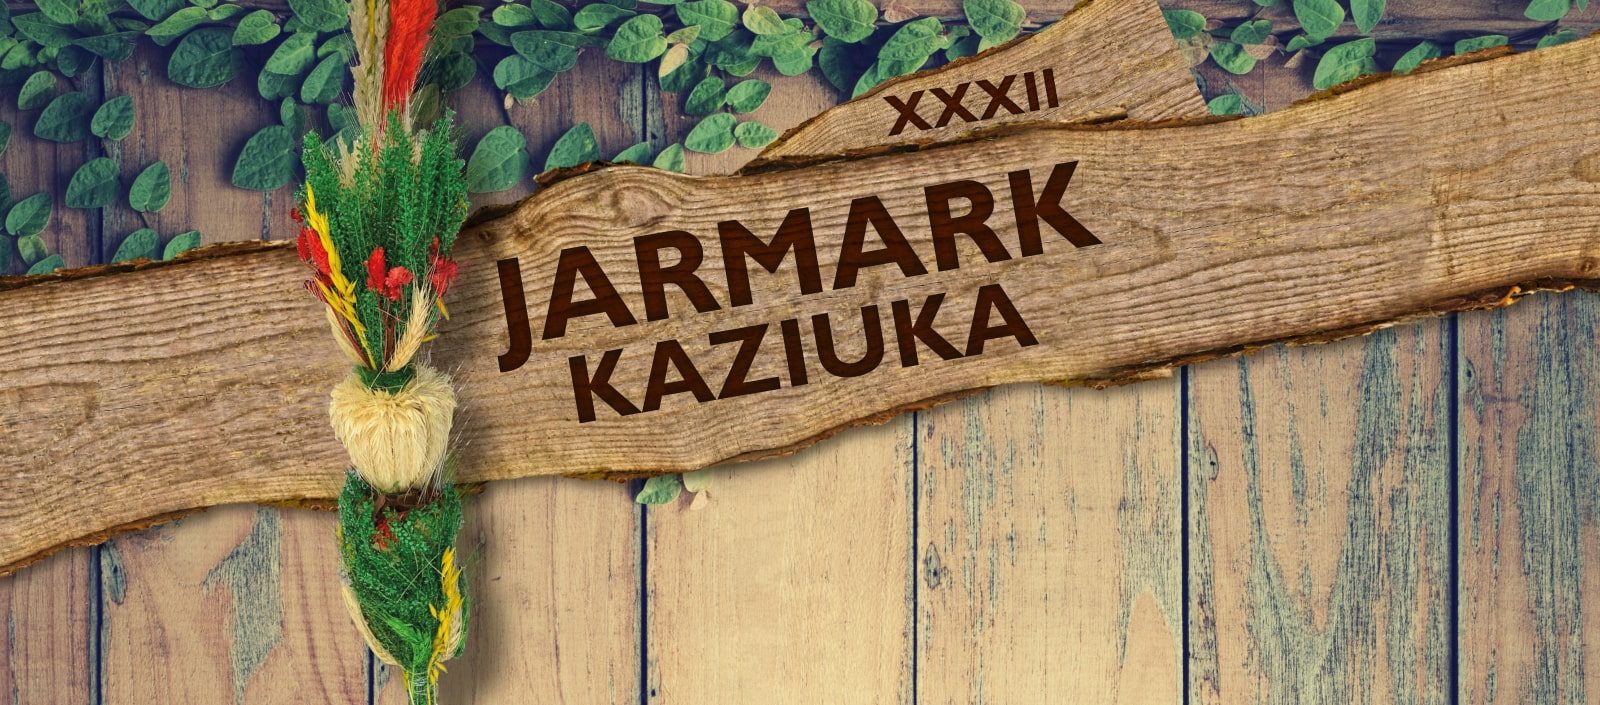  XXXII Jarmark Kaziuka